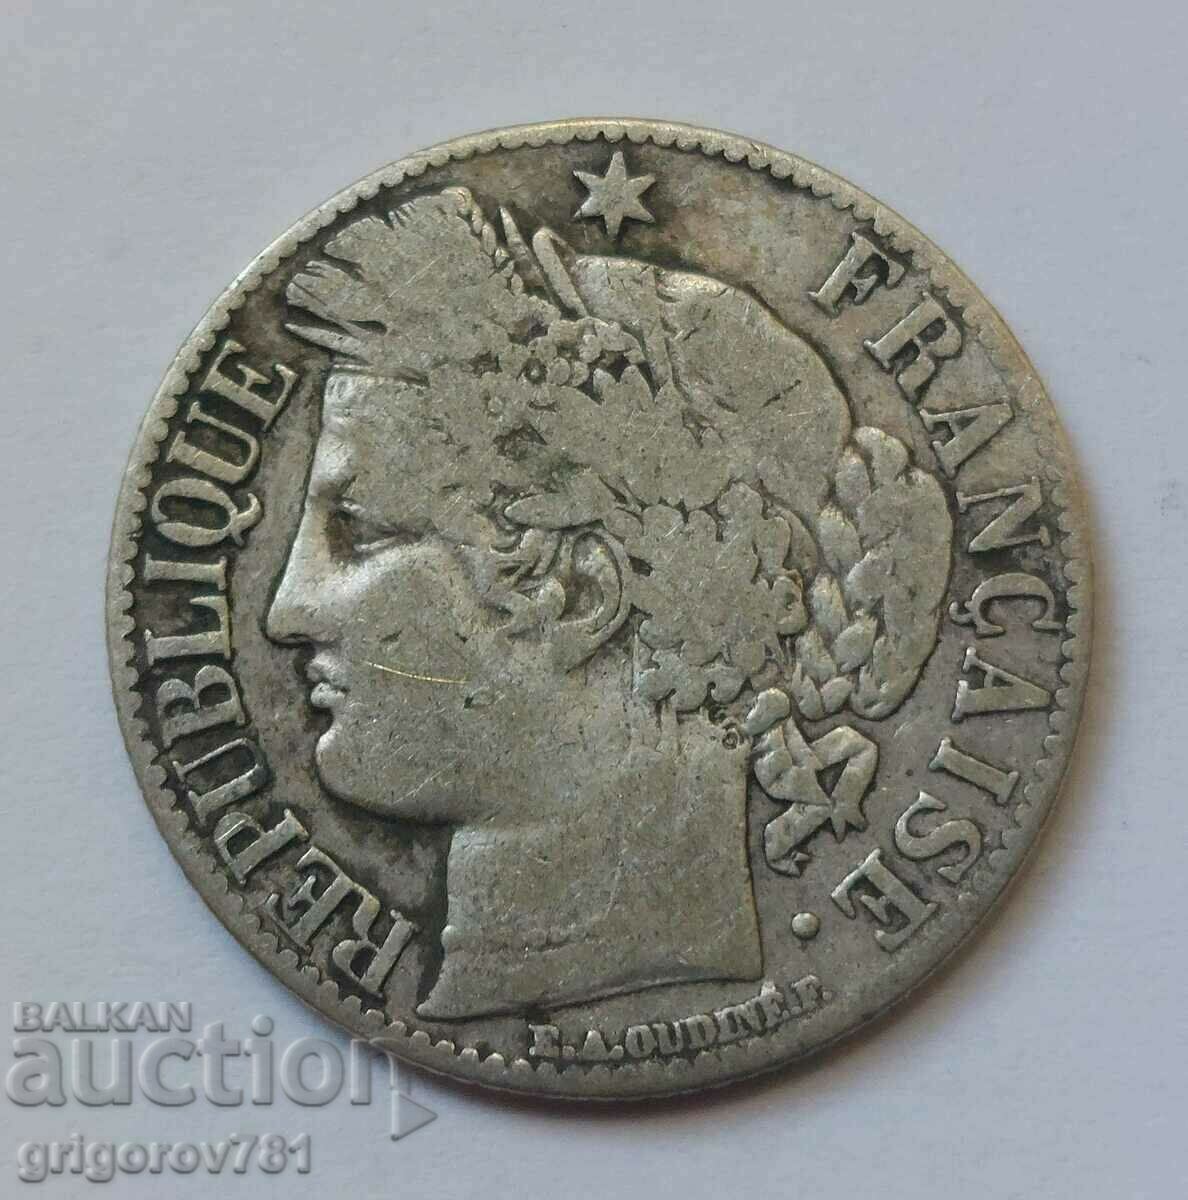 Ασήμι 1 φράγκου Γαλλία 1871 K - Ασημένιο νόμισμα #33